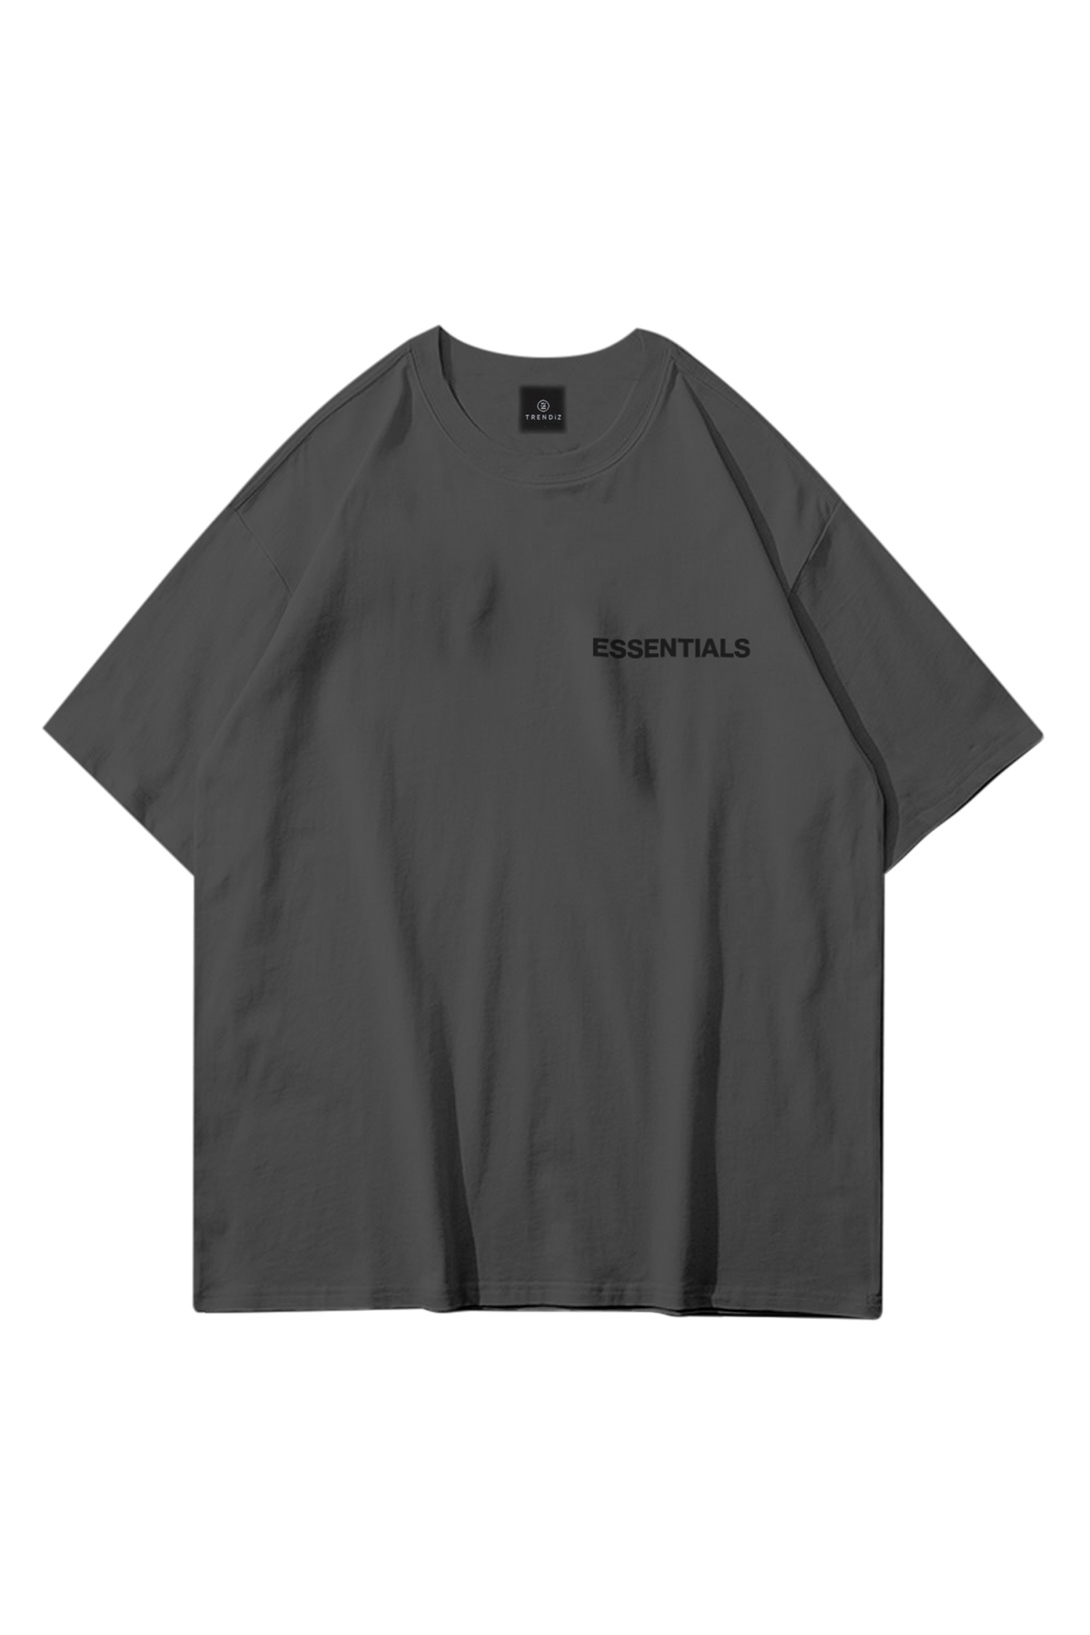 Trendiz Unisex Essentials 303 Antrasit Tshirt